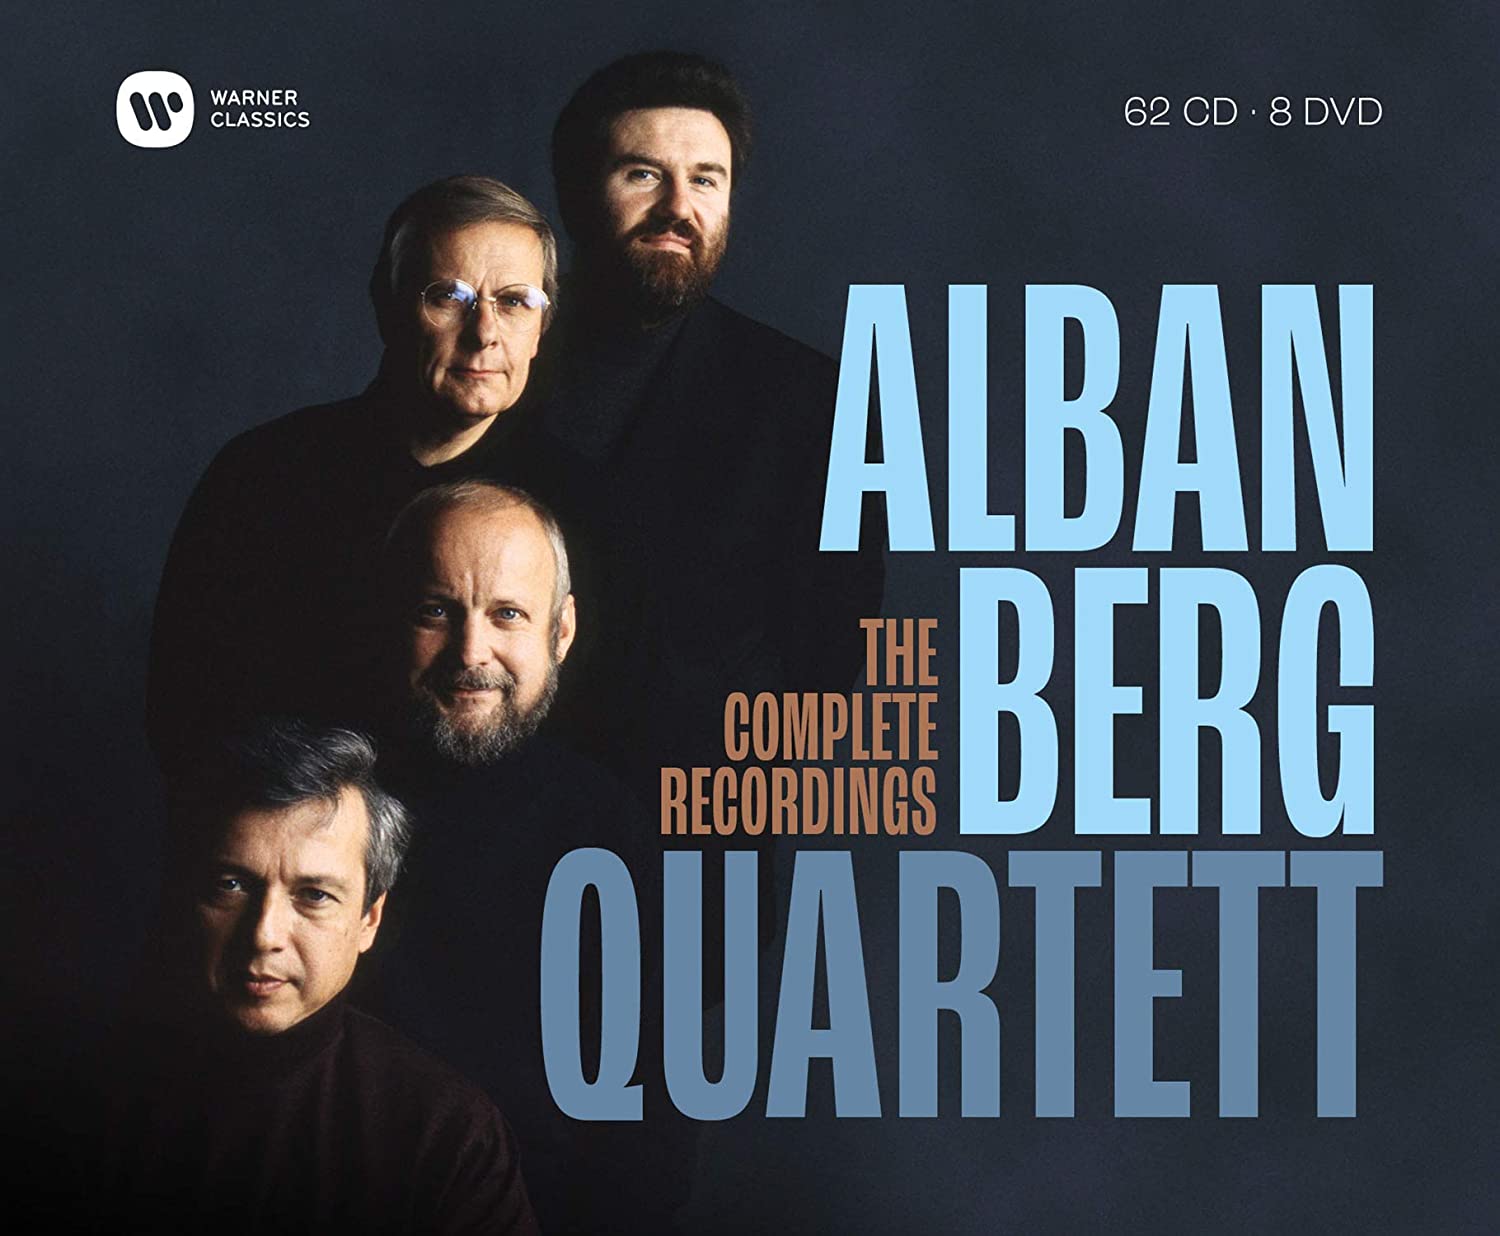 Alban Berg Quartett – Complete Recordings